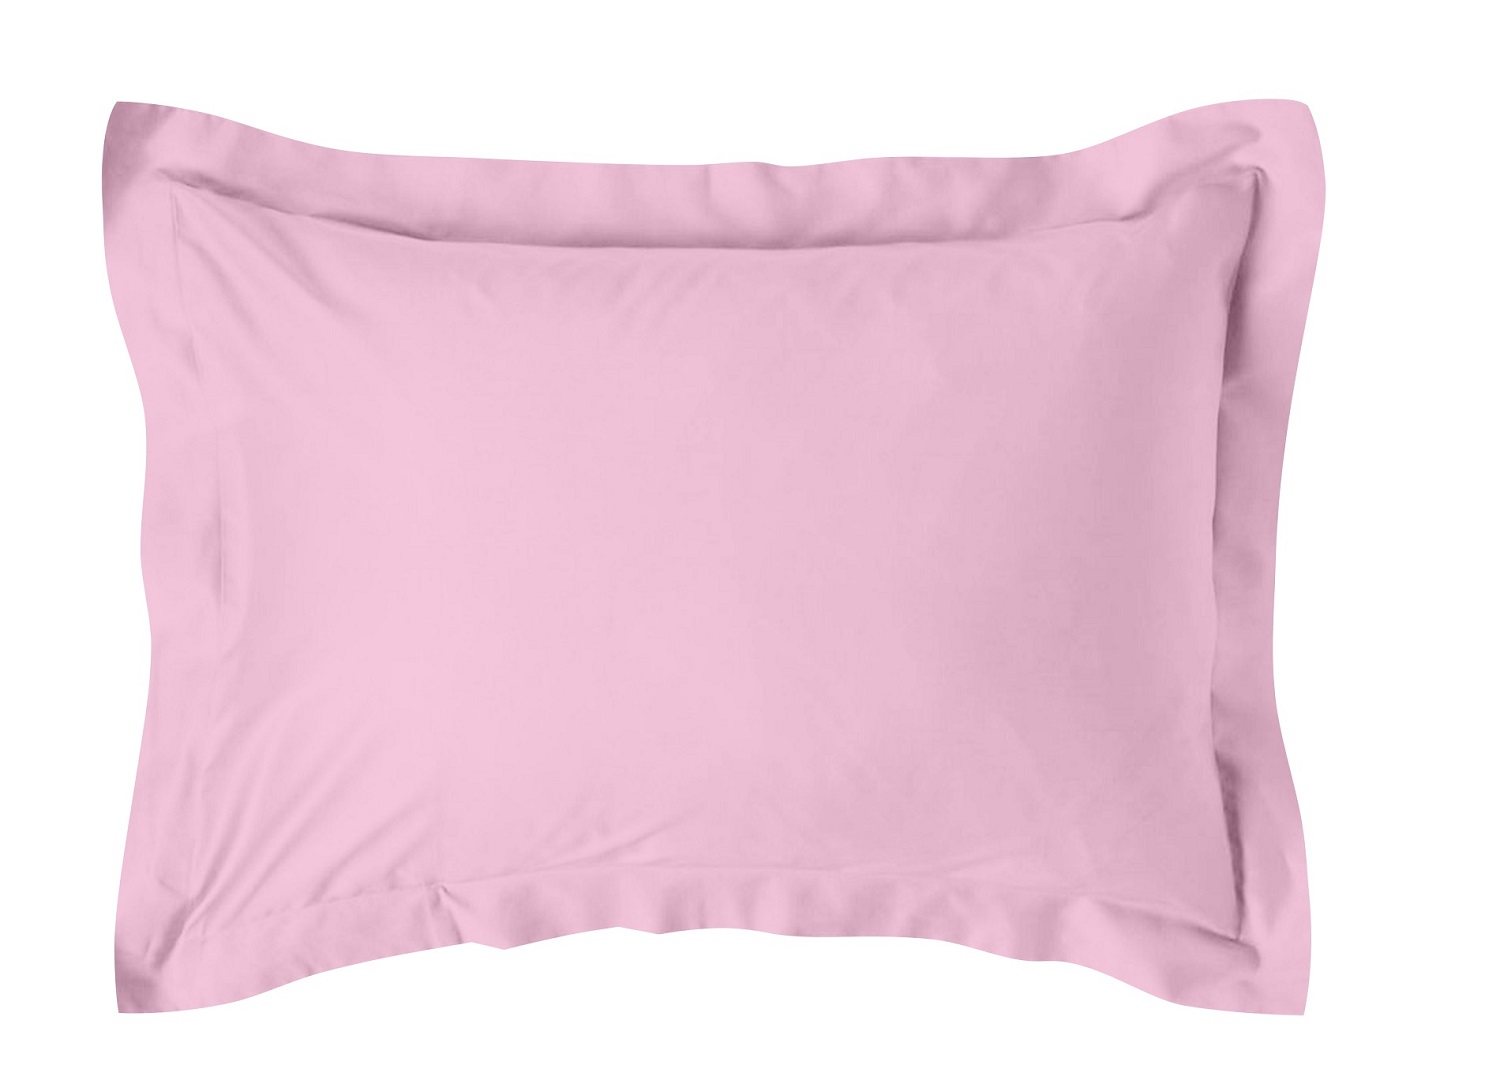 Ζεύγος Μαξιλαροθήκες Βαμβακοσατέν 50×70εκ. Oxford Alma 1 Pink Makis Tselios (Ύφασμα: Βαμβακοσατέν, Χρώμα: Ροζ) – Makis Tselios – 205670123456